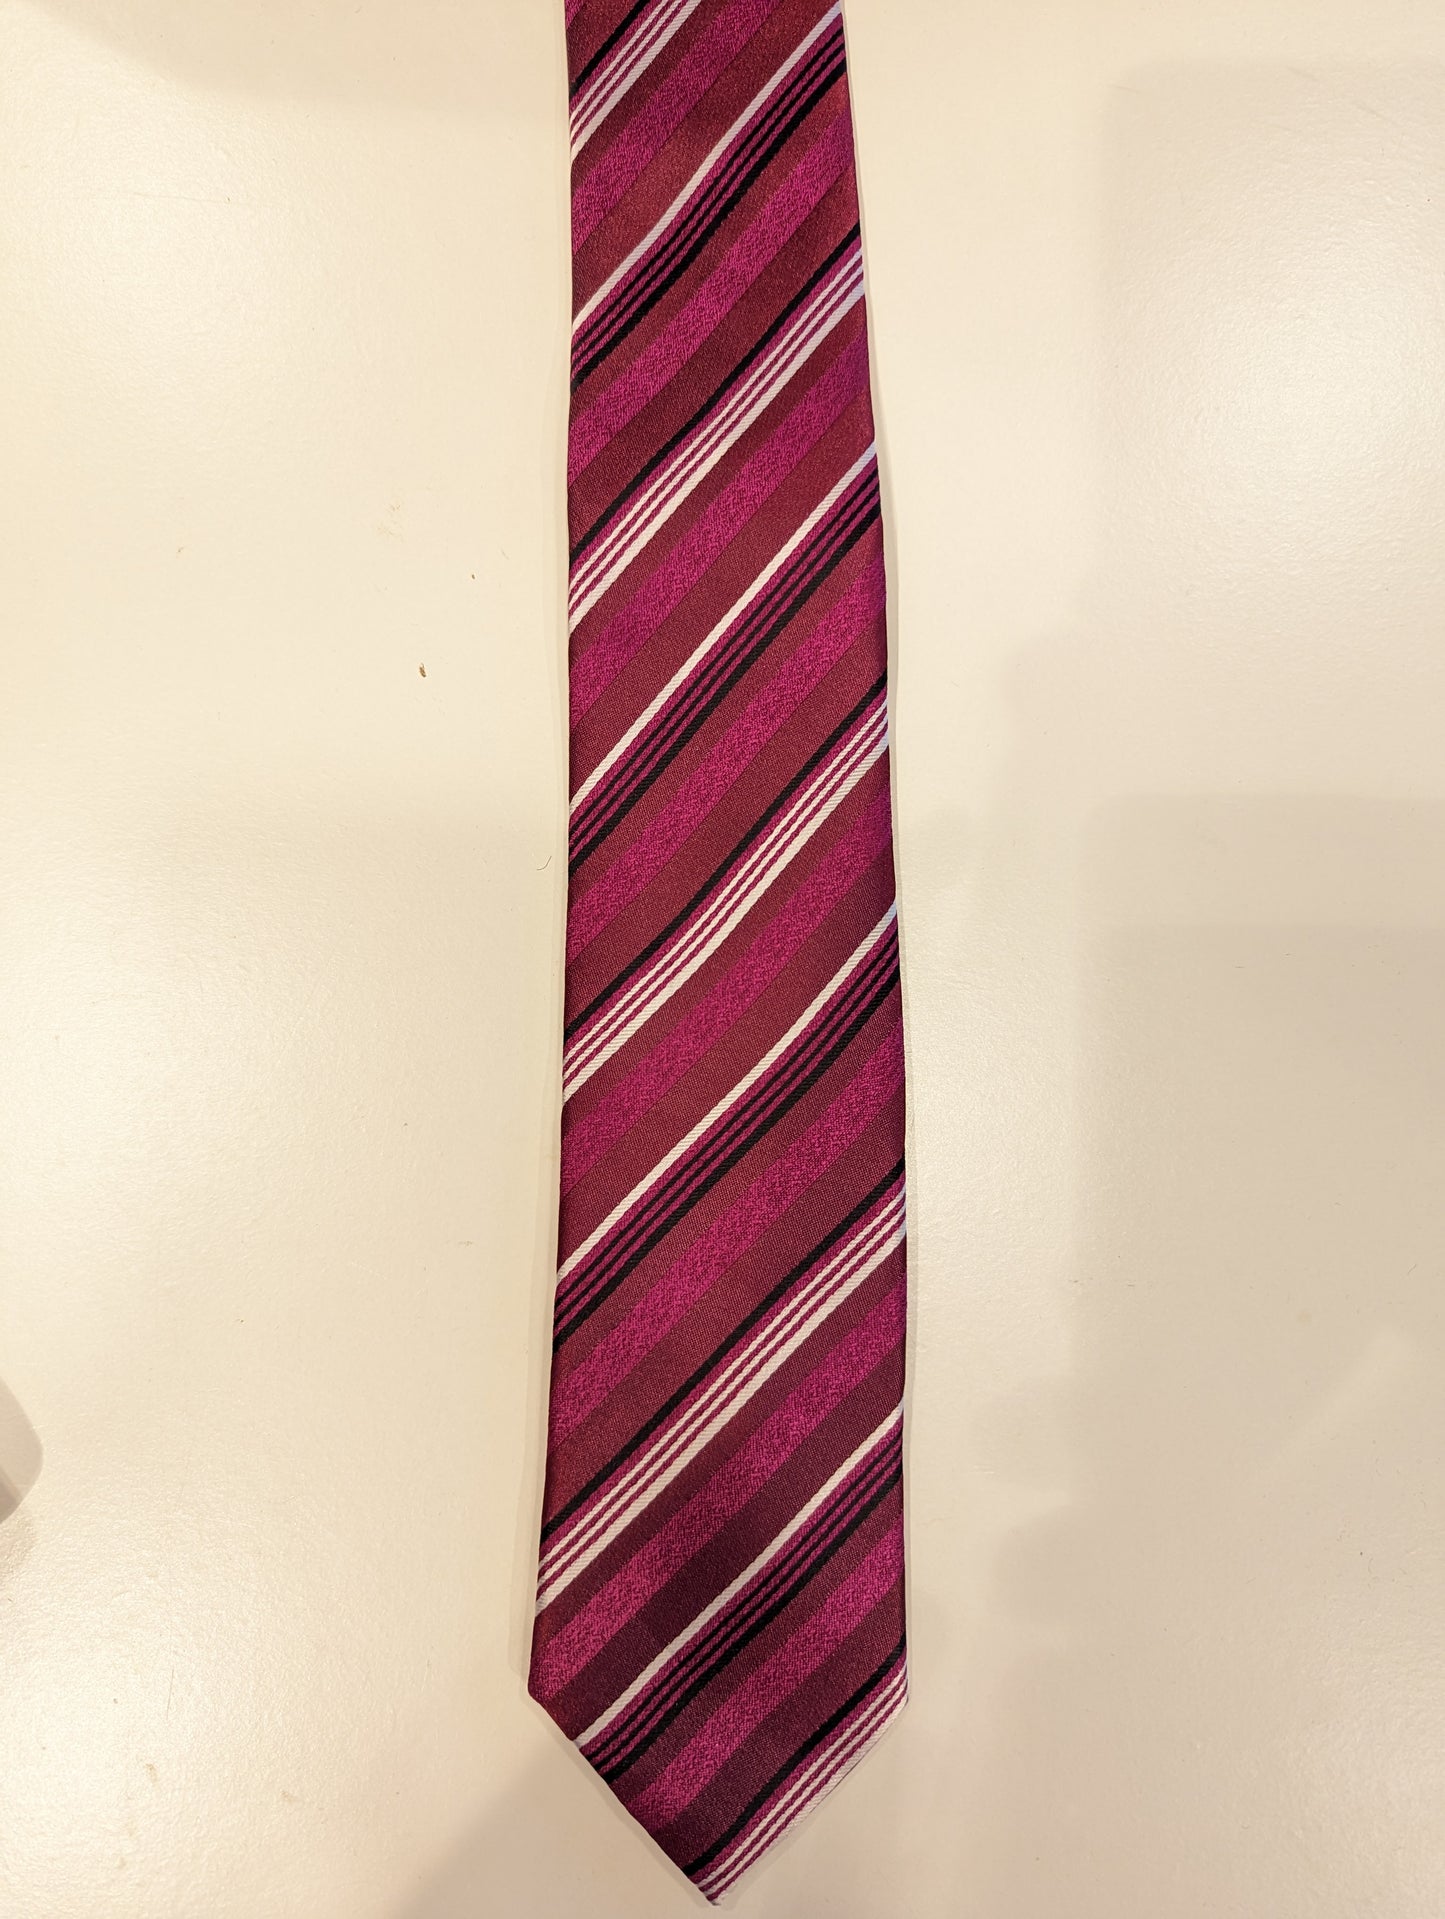 Gilvio Microfibre étroit à cravate. Brassement blanc violet.